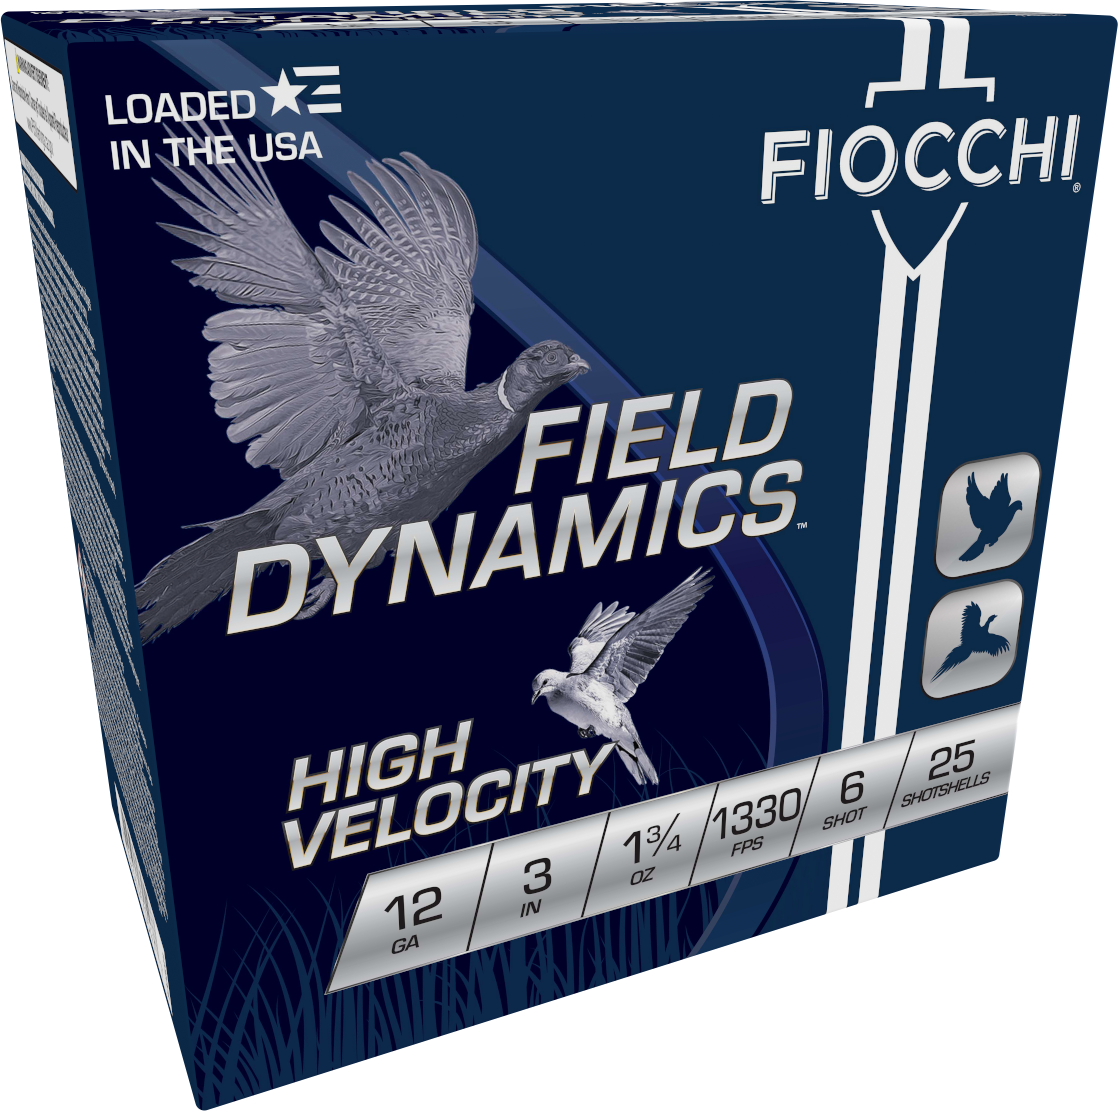 Fiocchi High Velocity 12ga. 3" 1 3/4 oz. #6 (1330 fps) PER BOX